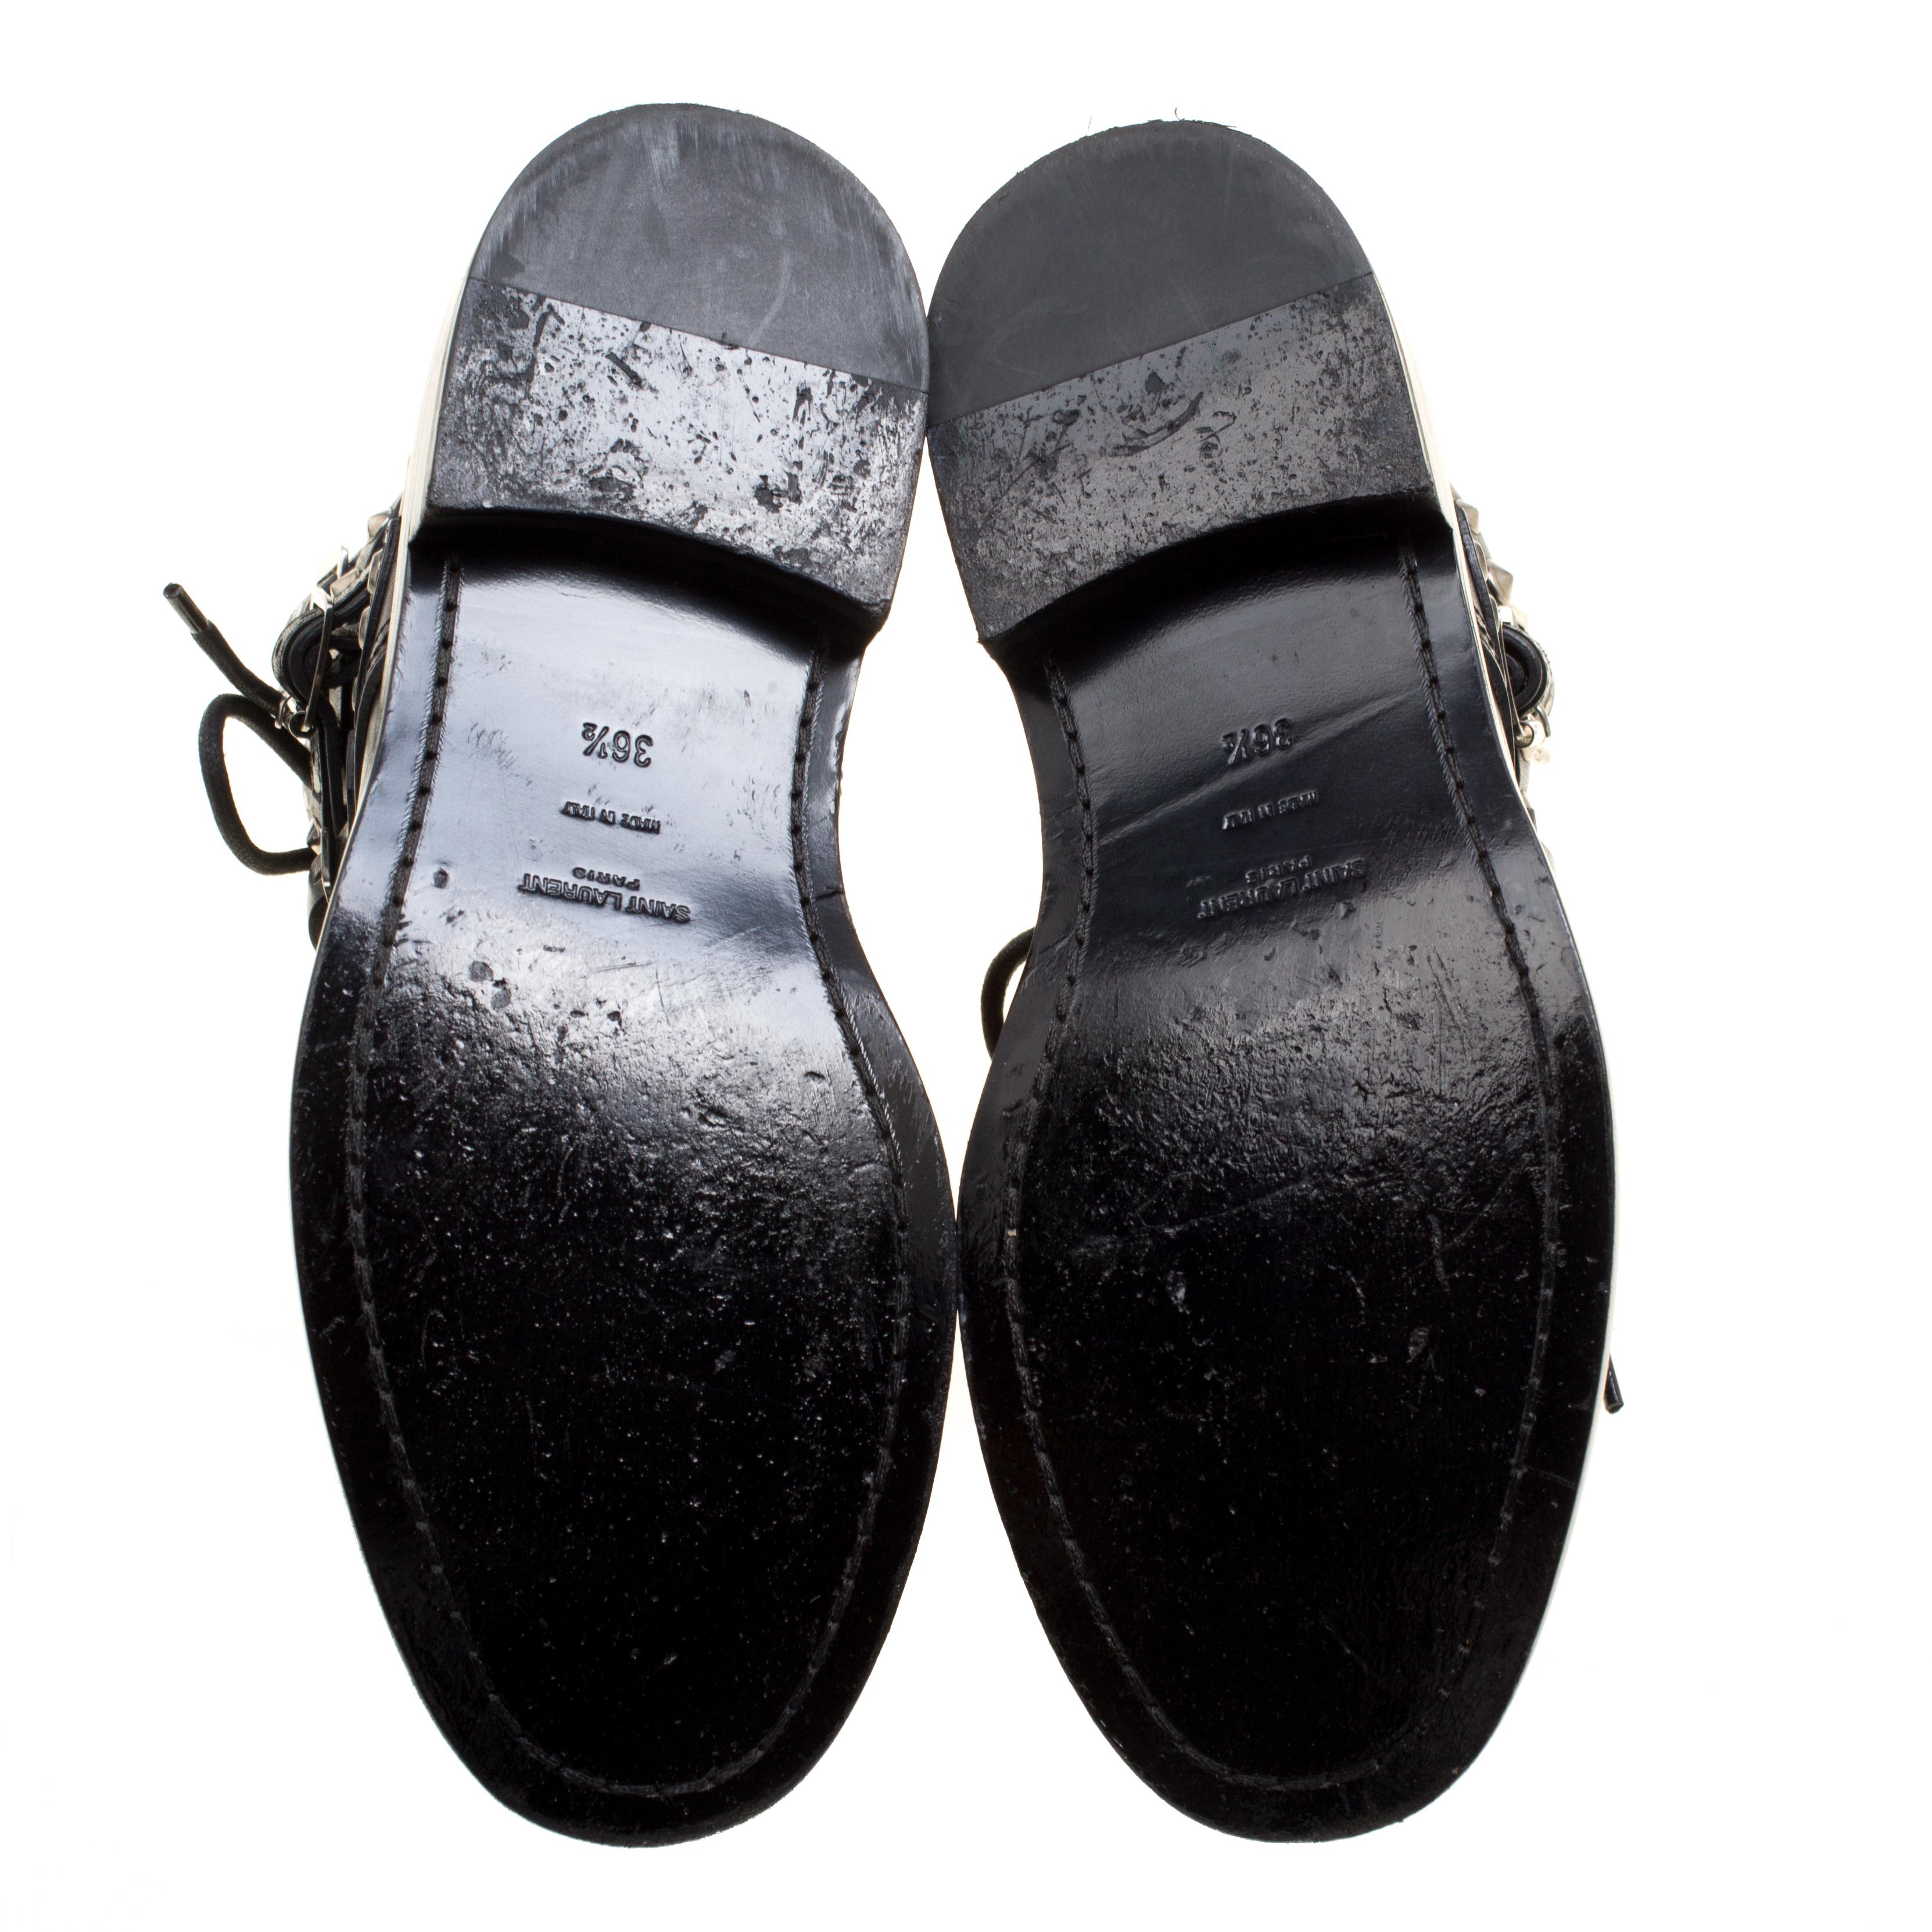 Saint Laurent Paris Black Leather Studded Rangers Ankle Boots Size 36.5 1